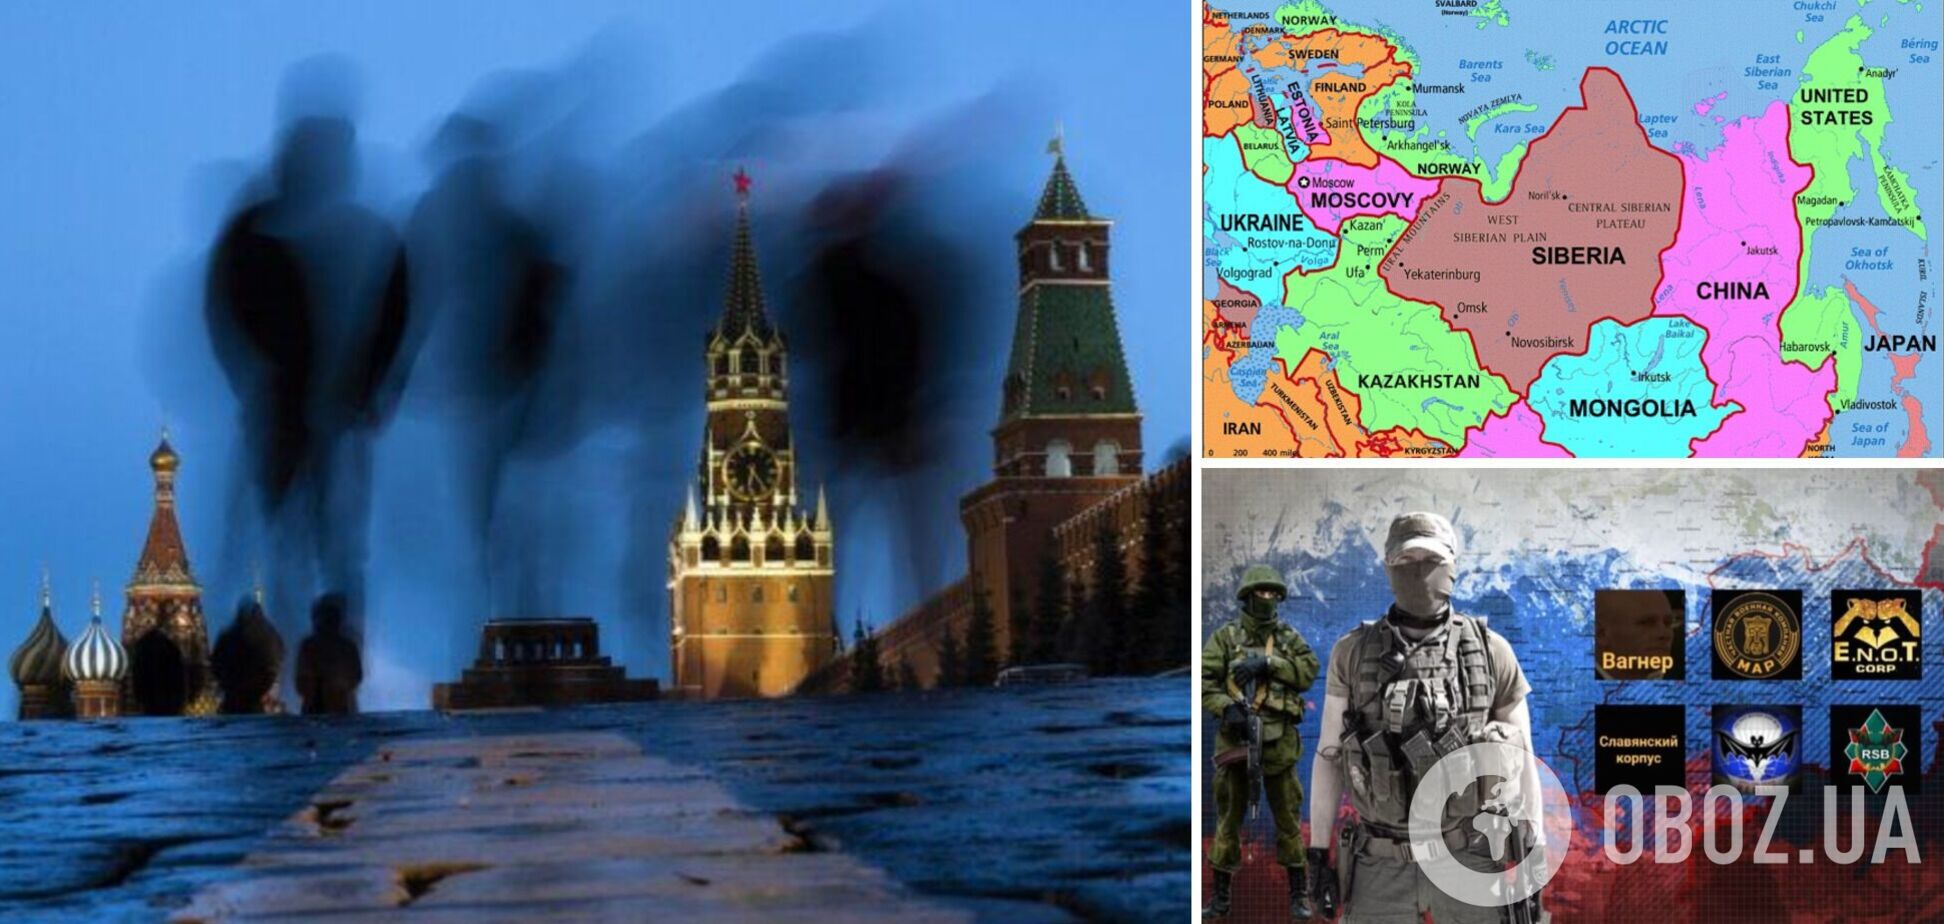 Маленькие армии внутри страны готовятся воевать: Огрызко дал прогноз по поводу распада России